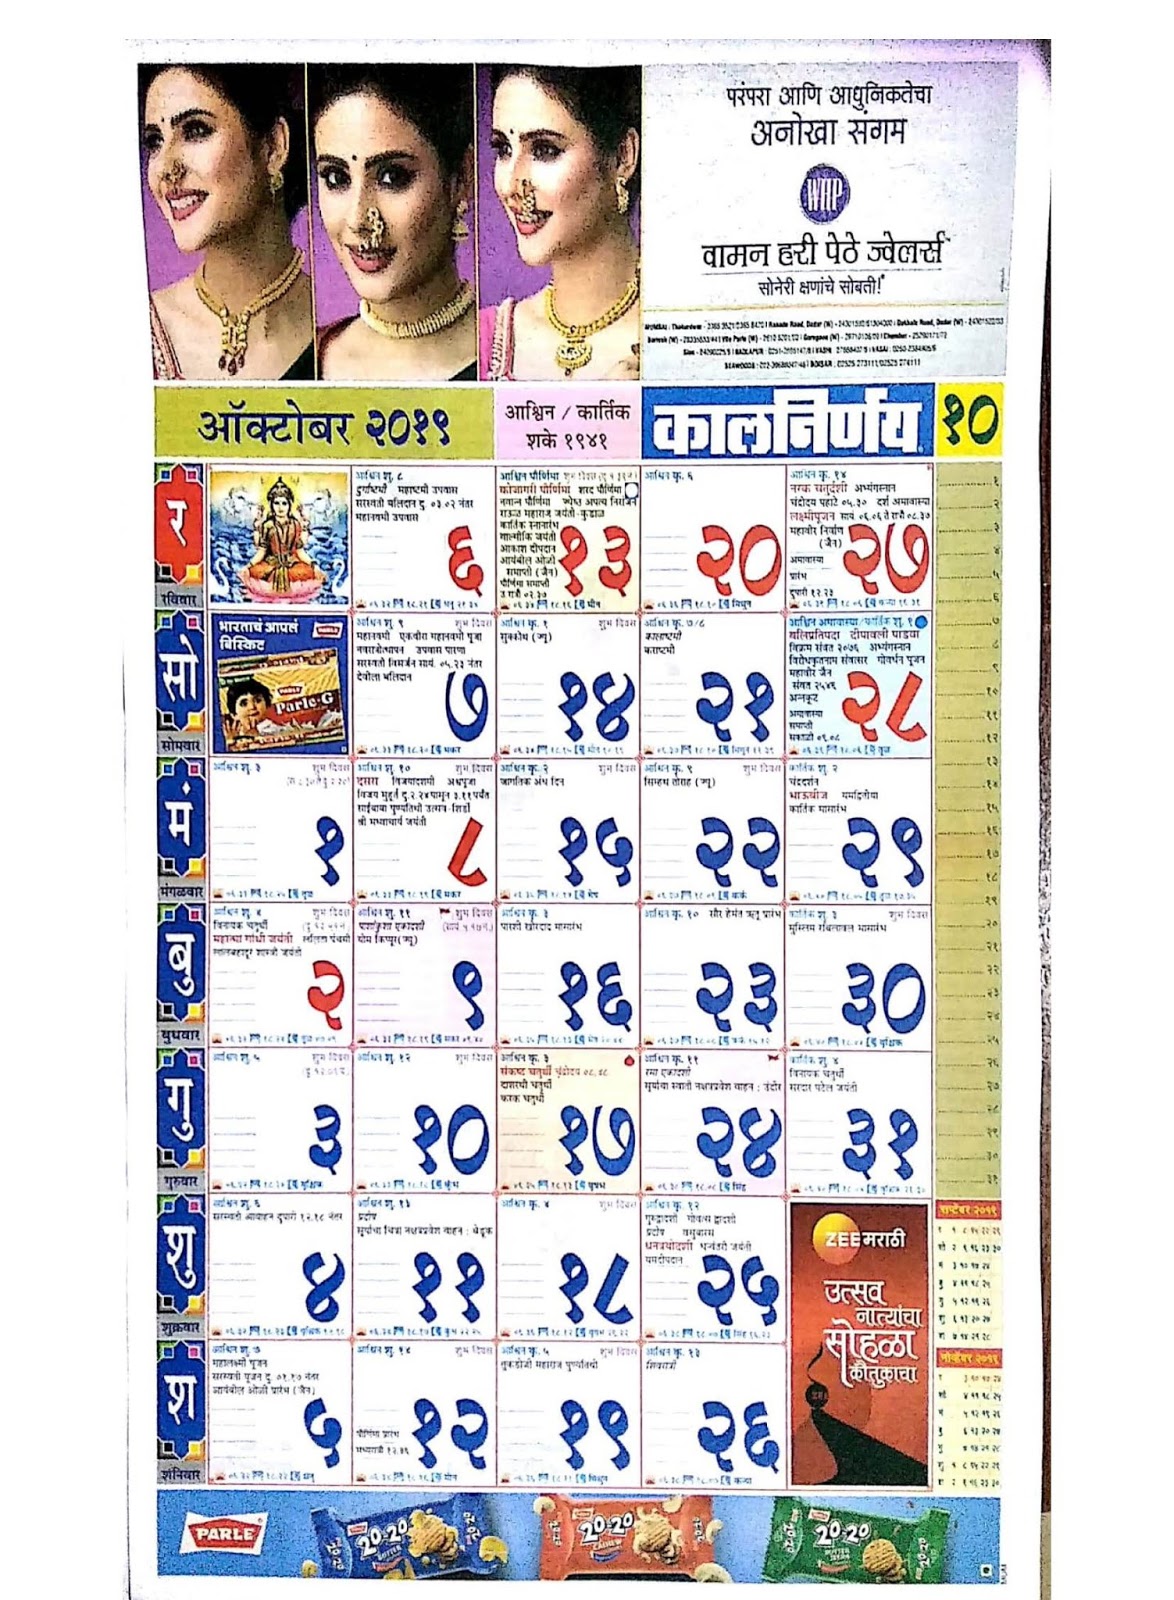 marathi-kalnirnay-calendar-2019